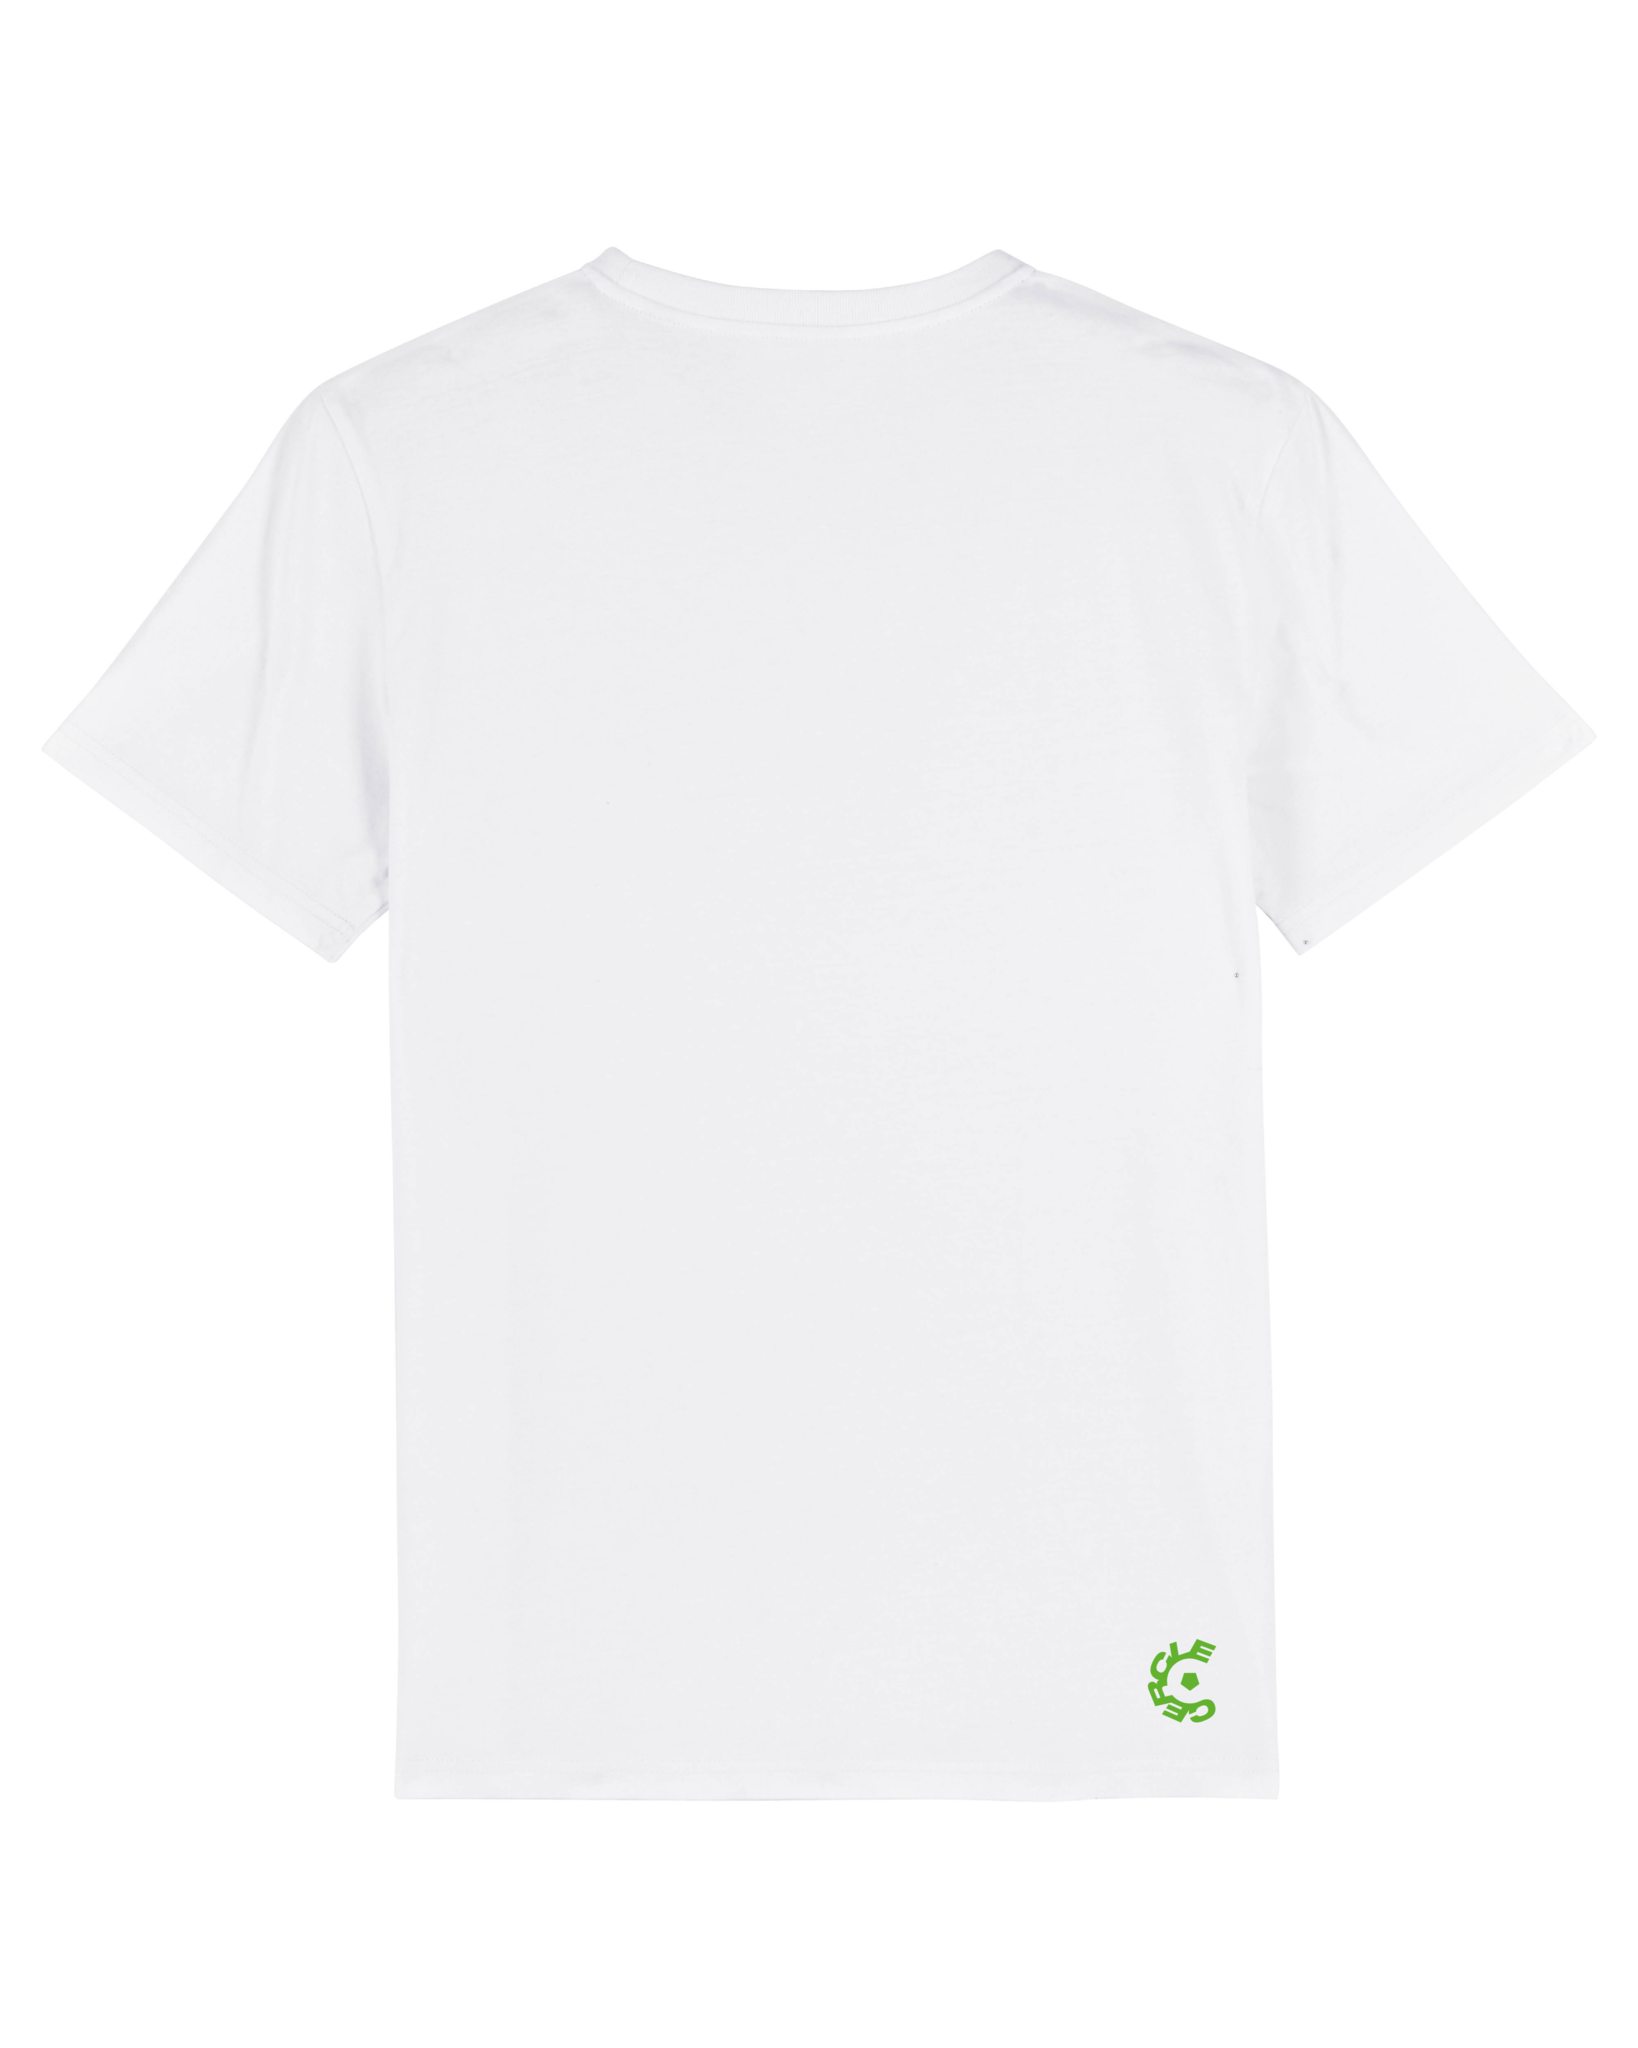 Topfanz Sustainable Unisex t-shirt white